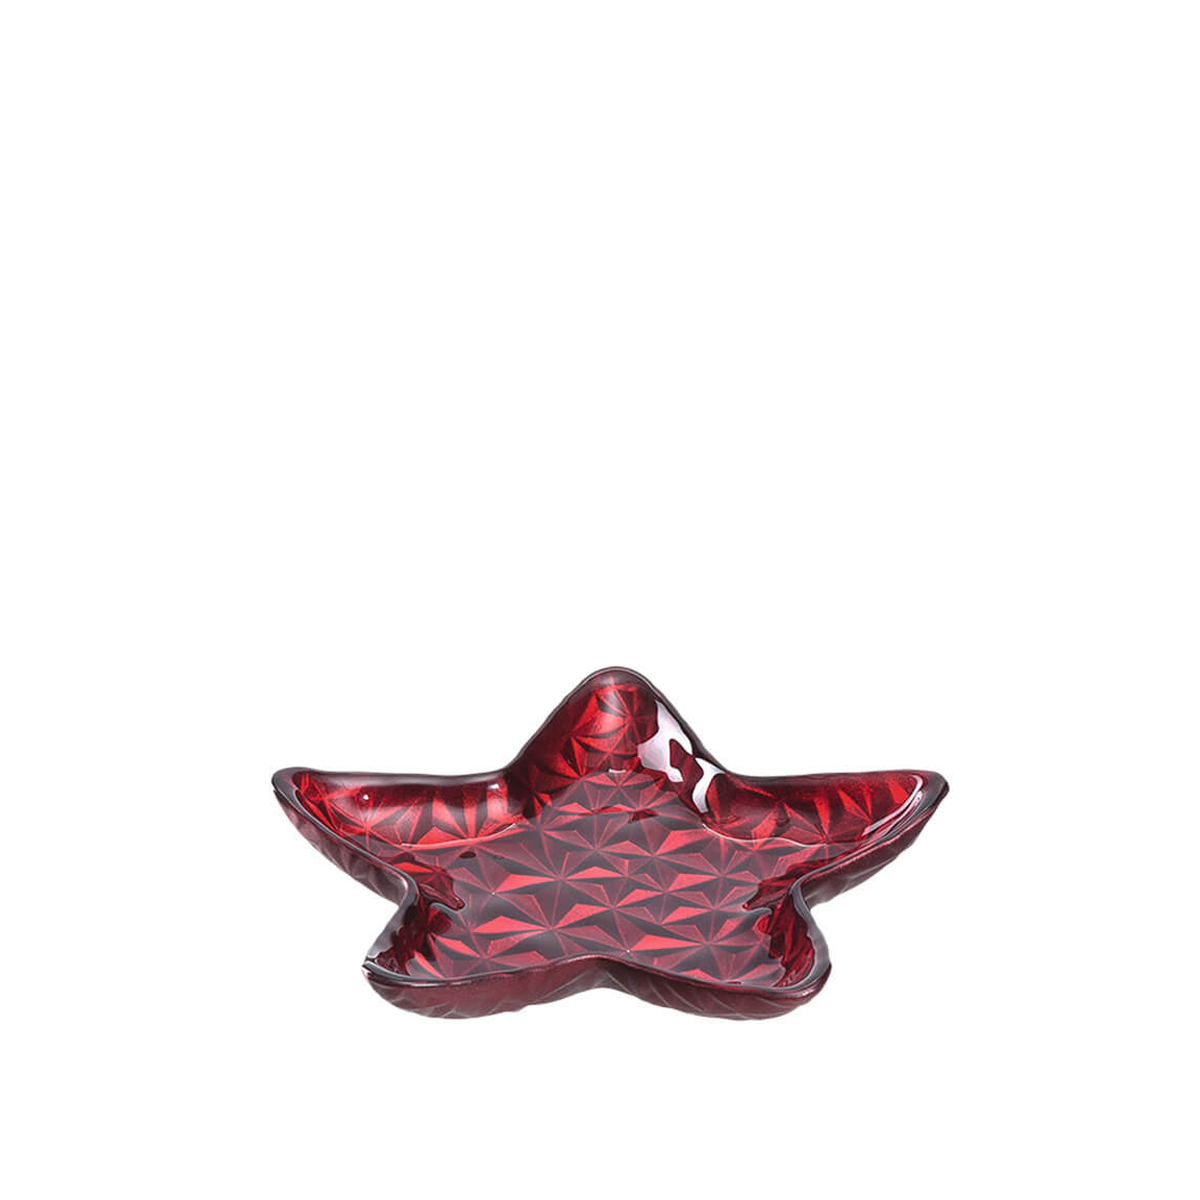 DECORA 15cm dekorativni tanjir, zvijezda/crvena